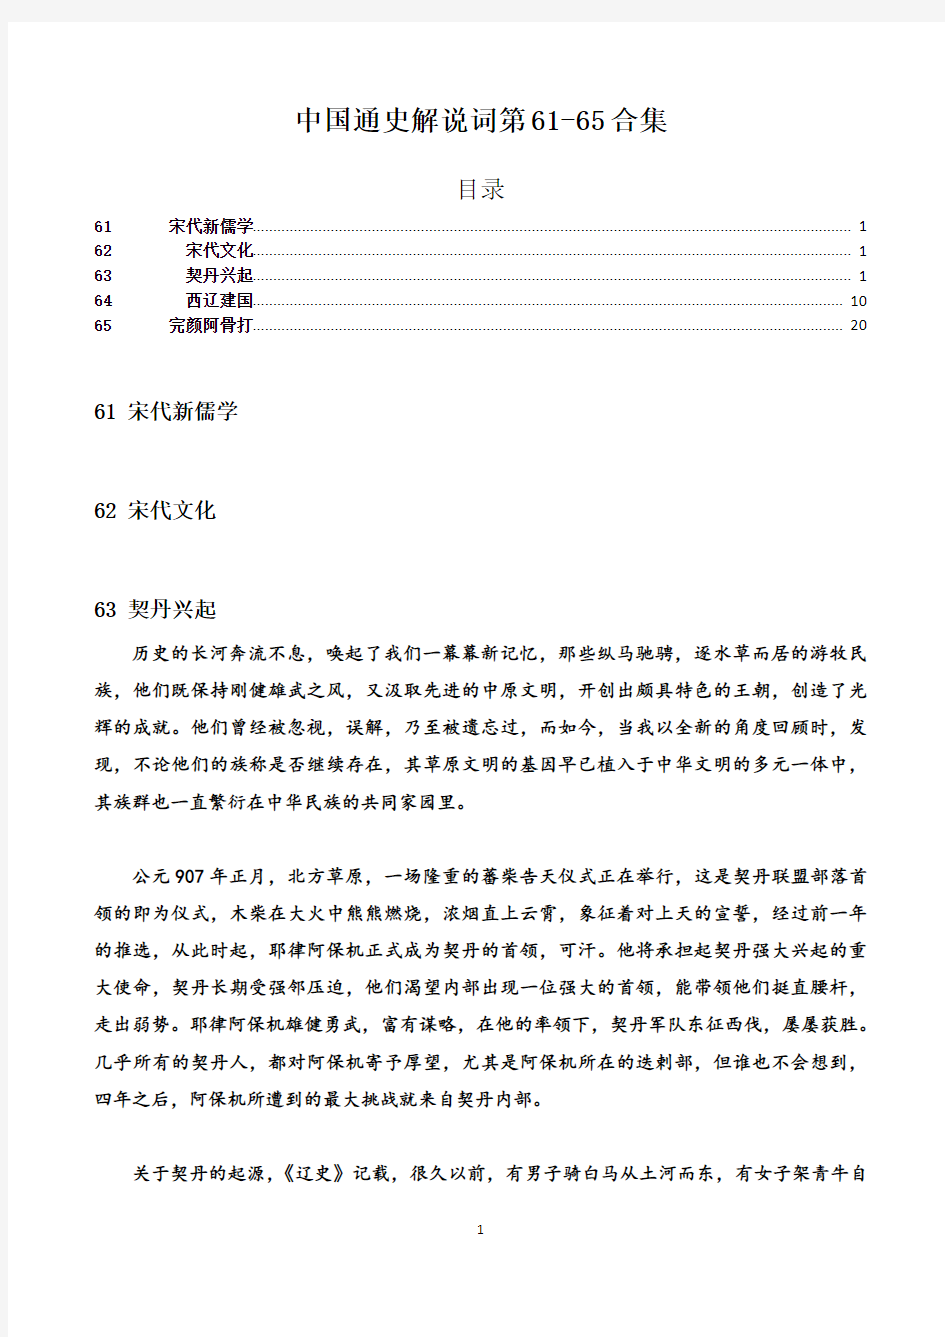 中国通史解说词第61-65合集(缺61.62.65)